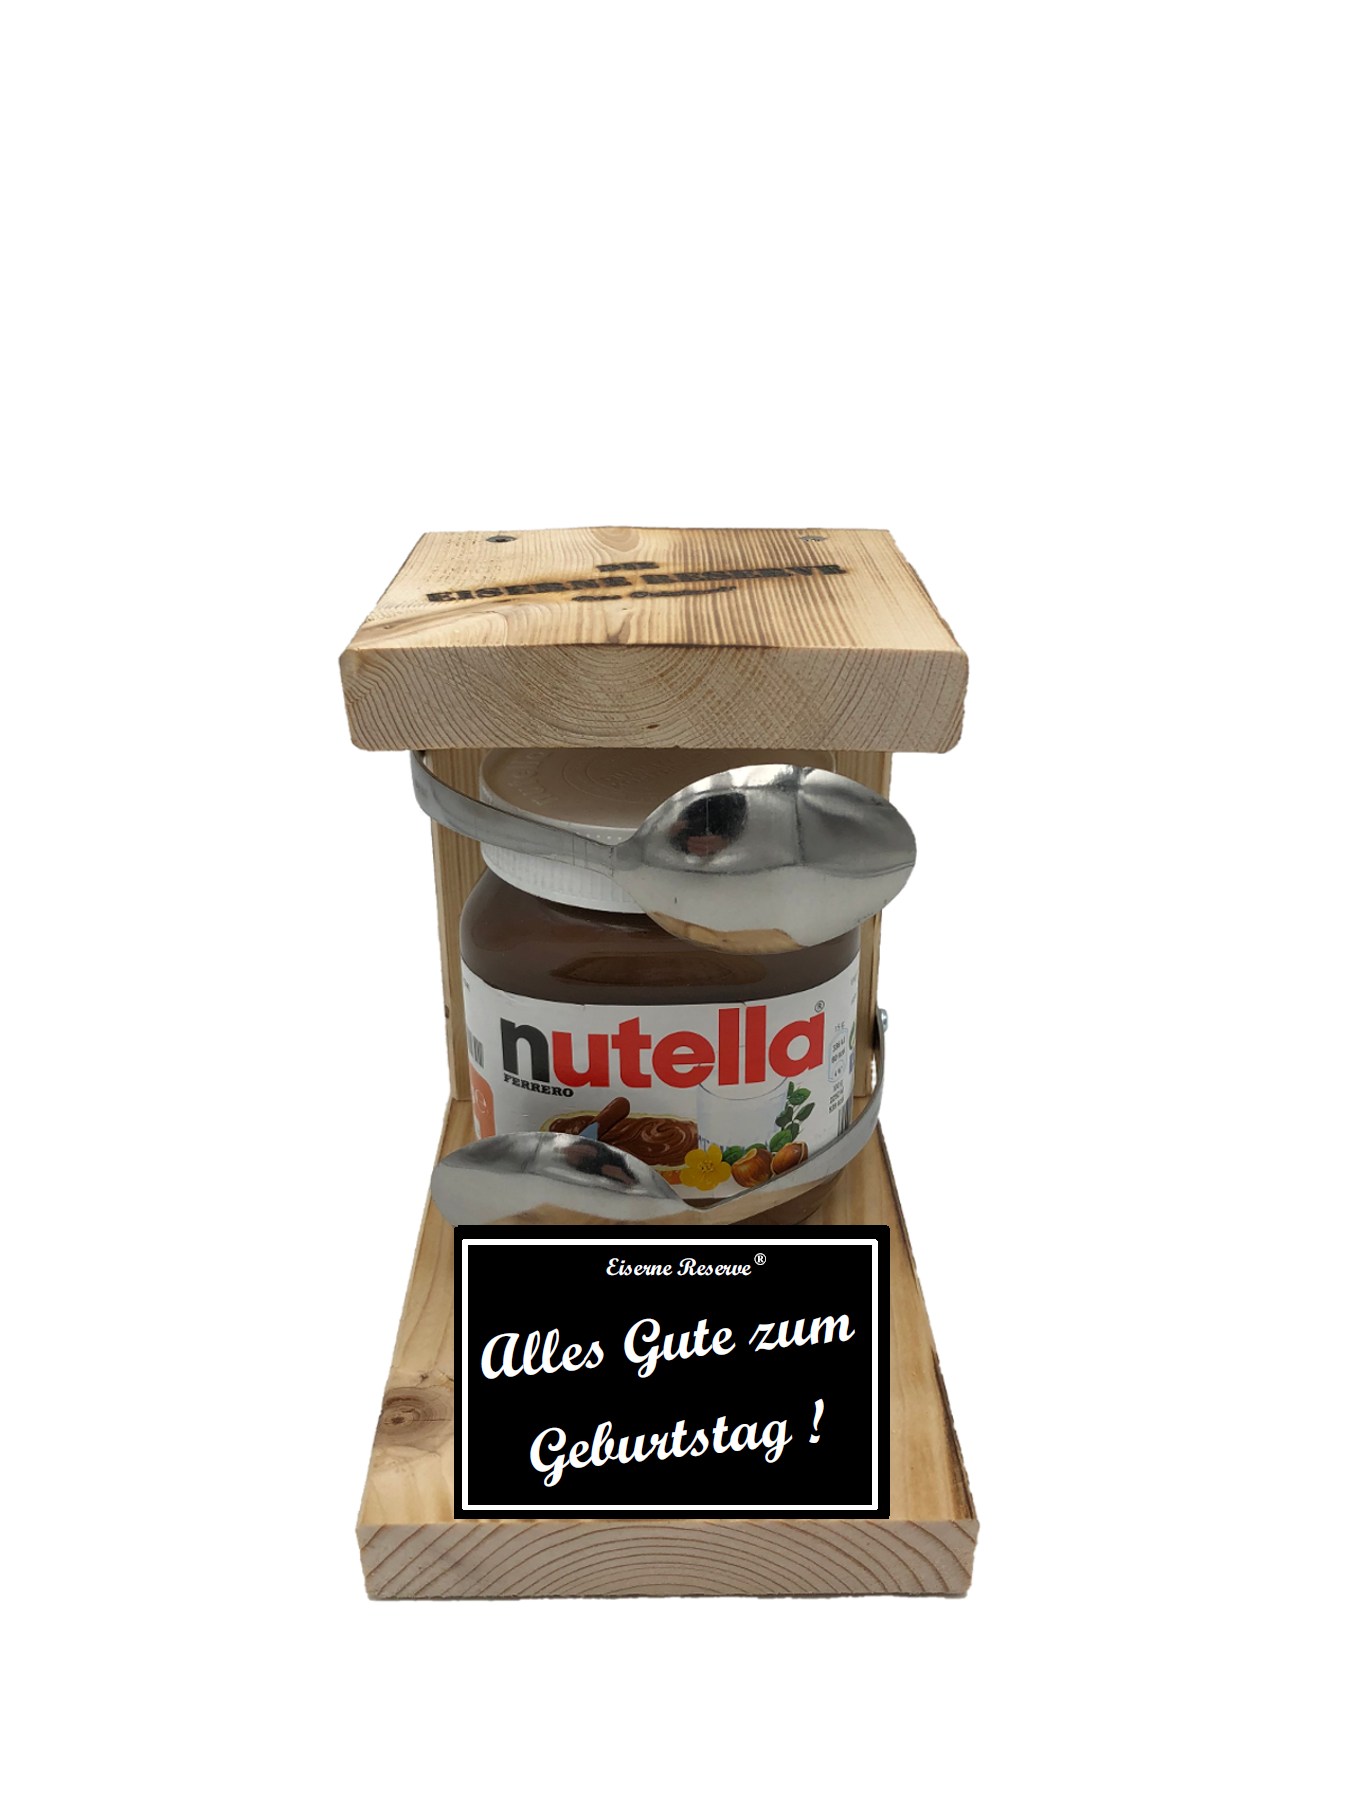 Alles Gute zum Geburtstag Löffel Nutella Geschenk - Die Nutella Geschenkidee